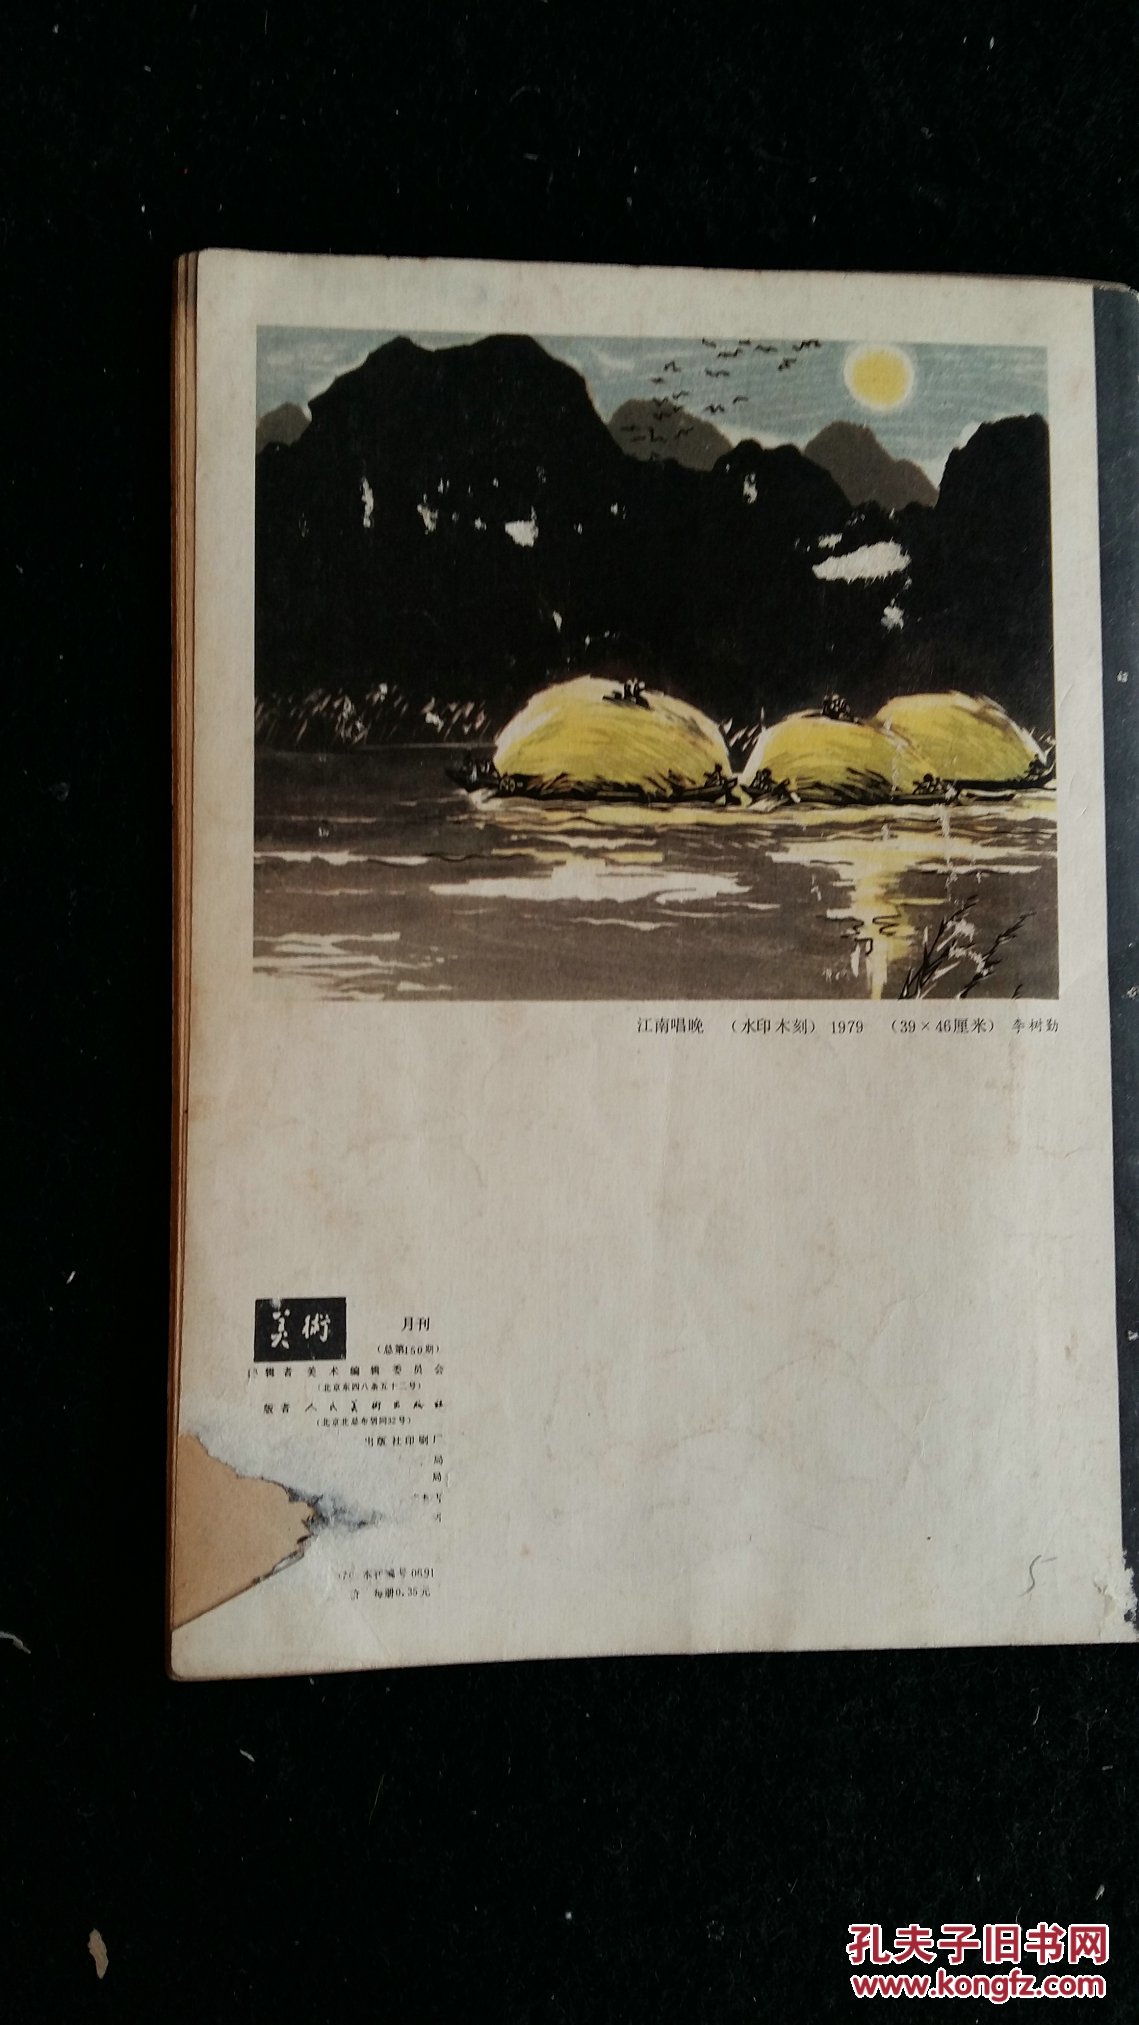 【图】美术杂志 1980.6_价格:8.00